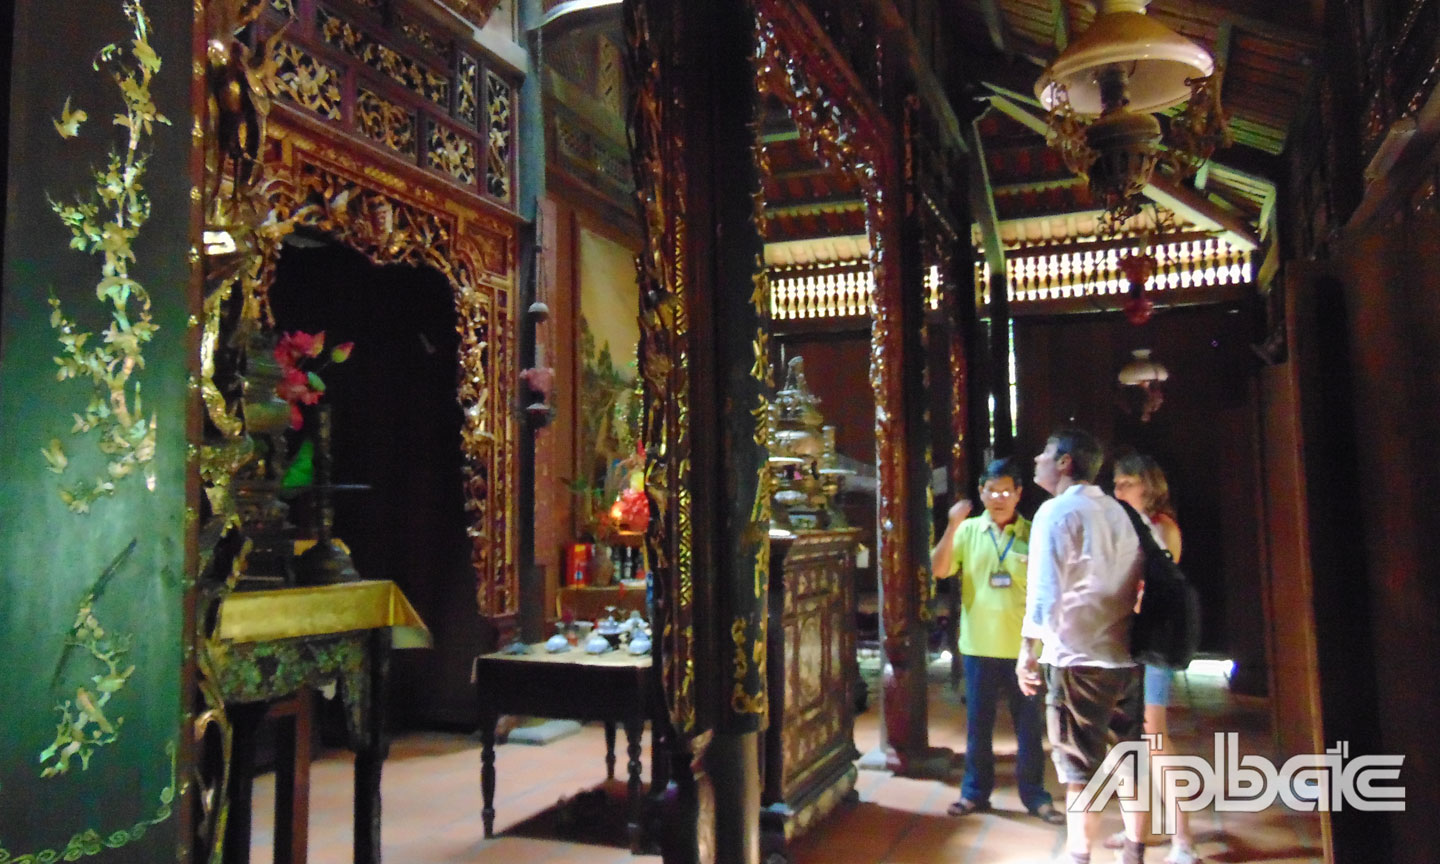 Bên trong nhà cổ của ông Kiệt, các hoa văn chạm khắc trên các bộ kèo, cột, xiên và vách rất công phu theo kiểu nhà xưa của Nam bộ. 